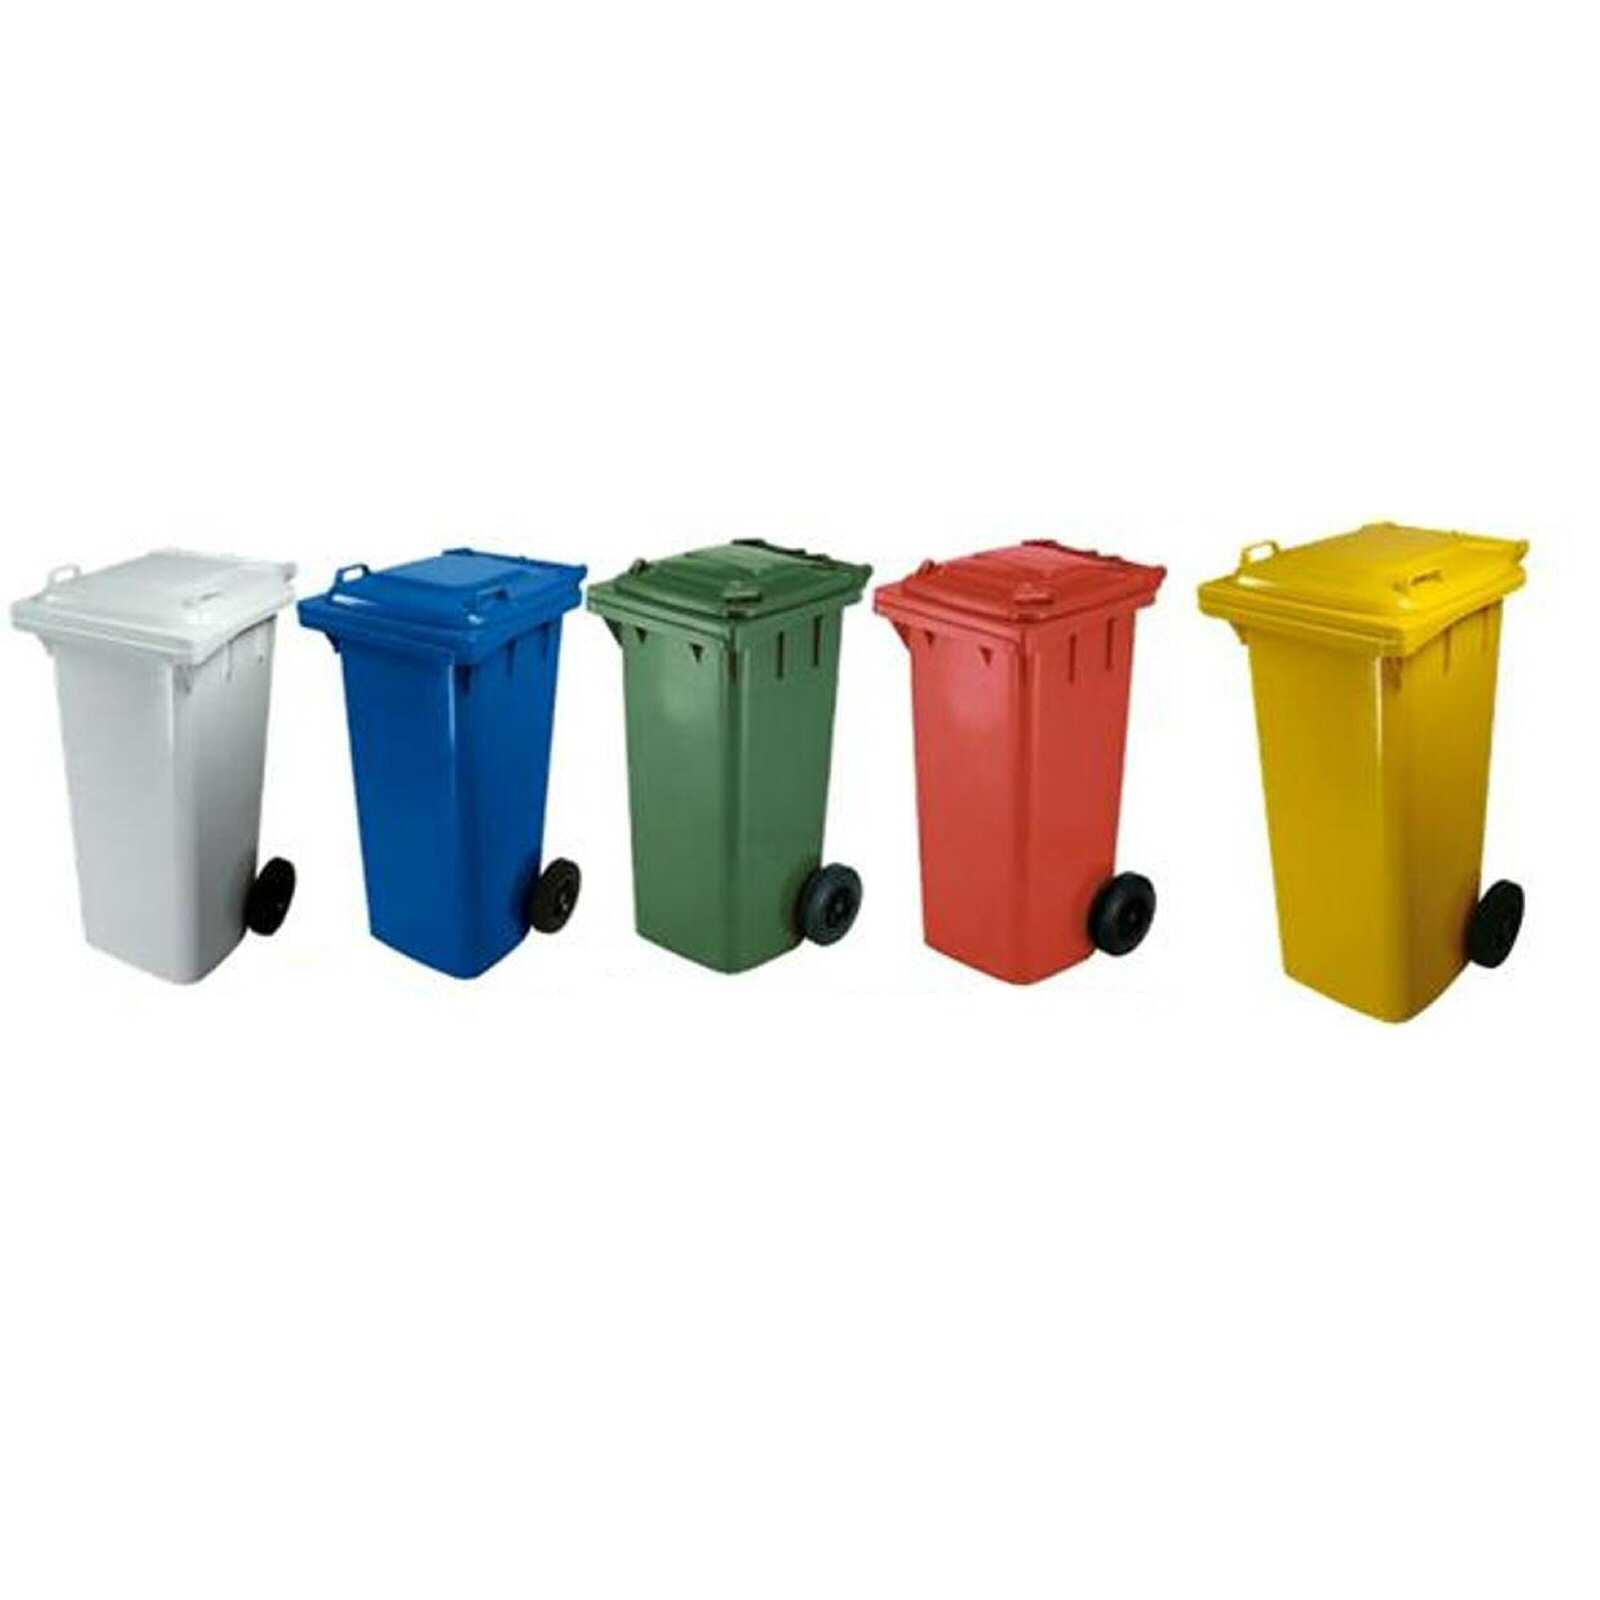 4 scatole dei rifiuti senza foro punzonato Antracite Grigio per 240 LITRI bidoni della spazzatura 